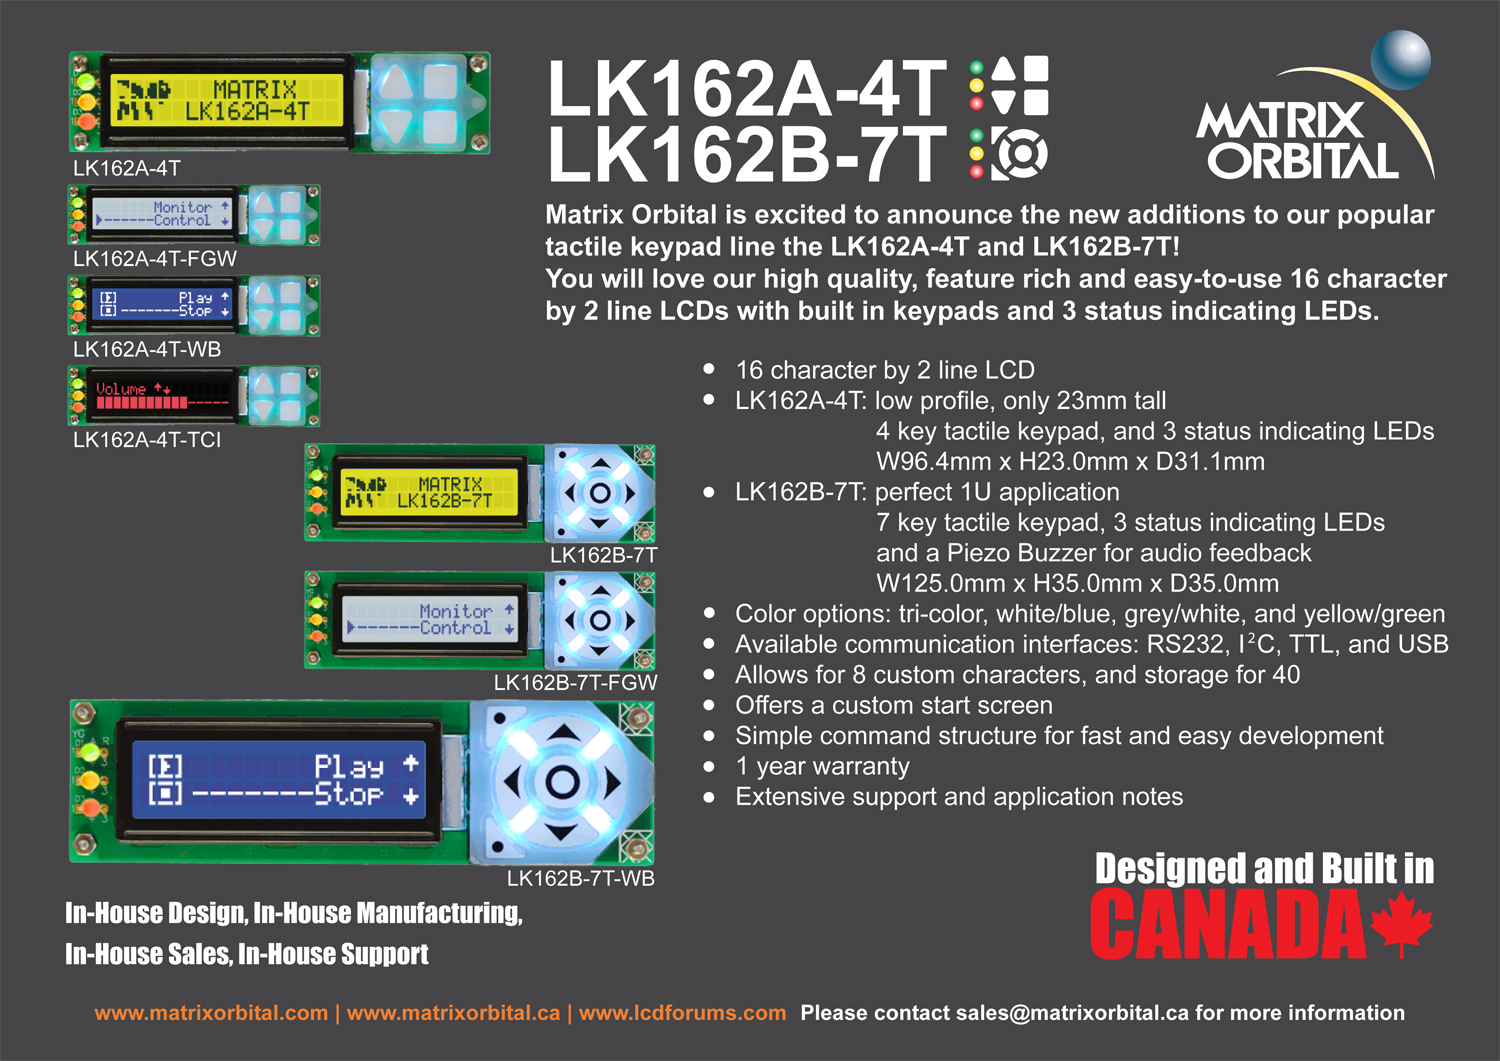 LK162A-4T, LK162B-7T